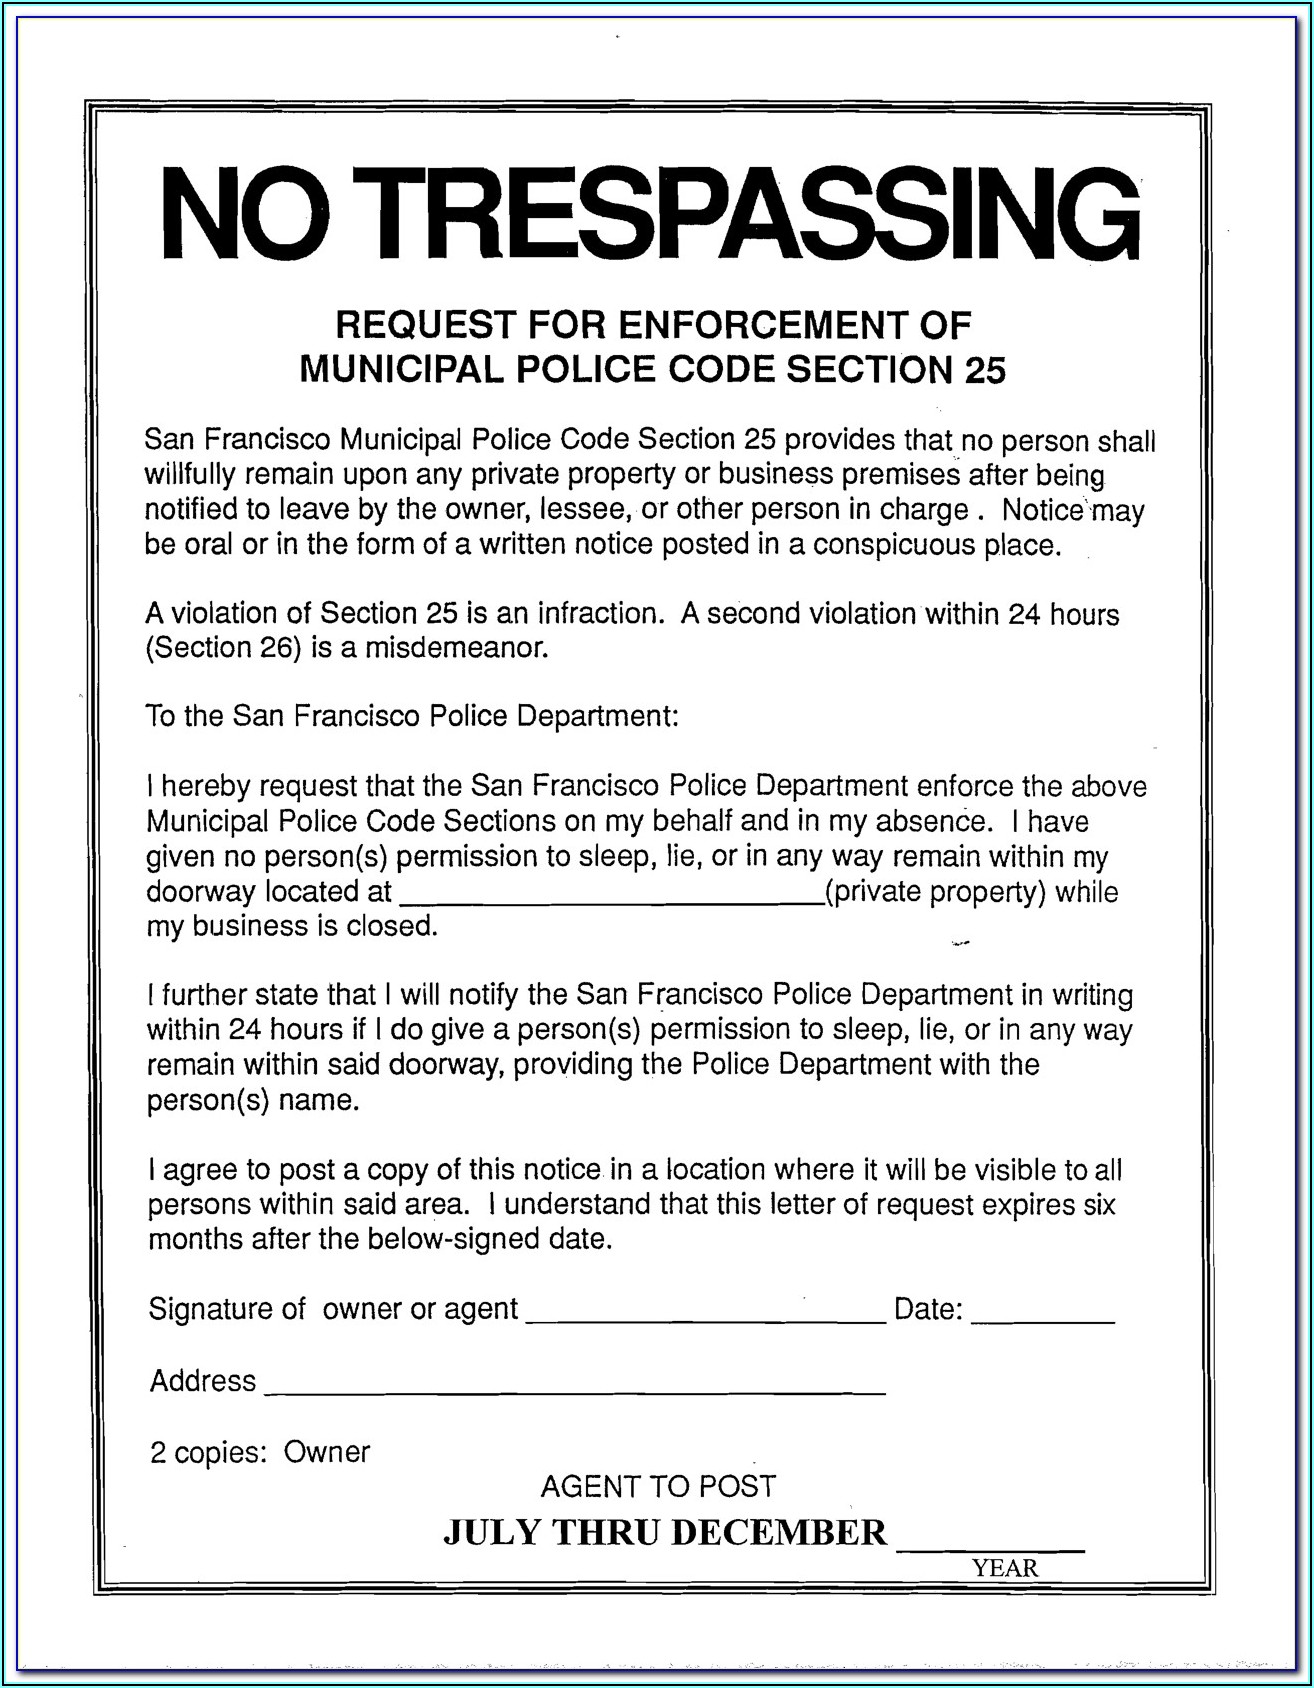 No Trespassing Form